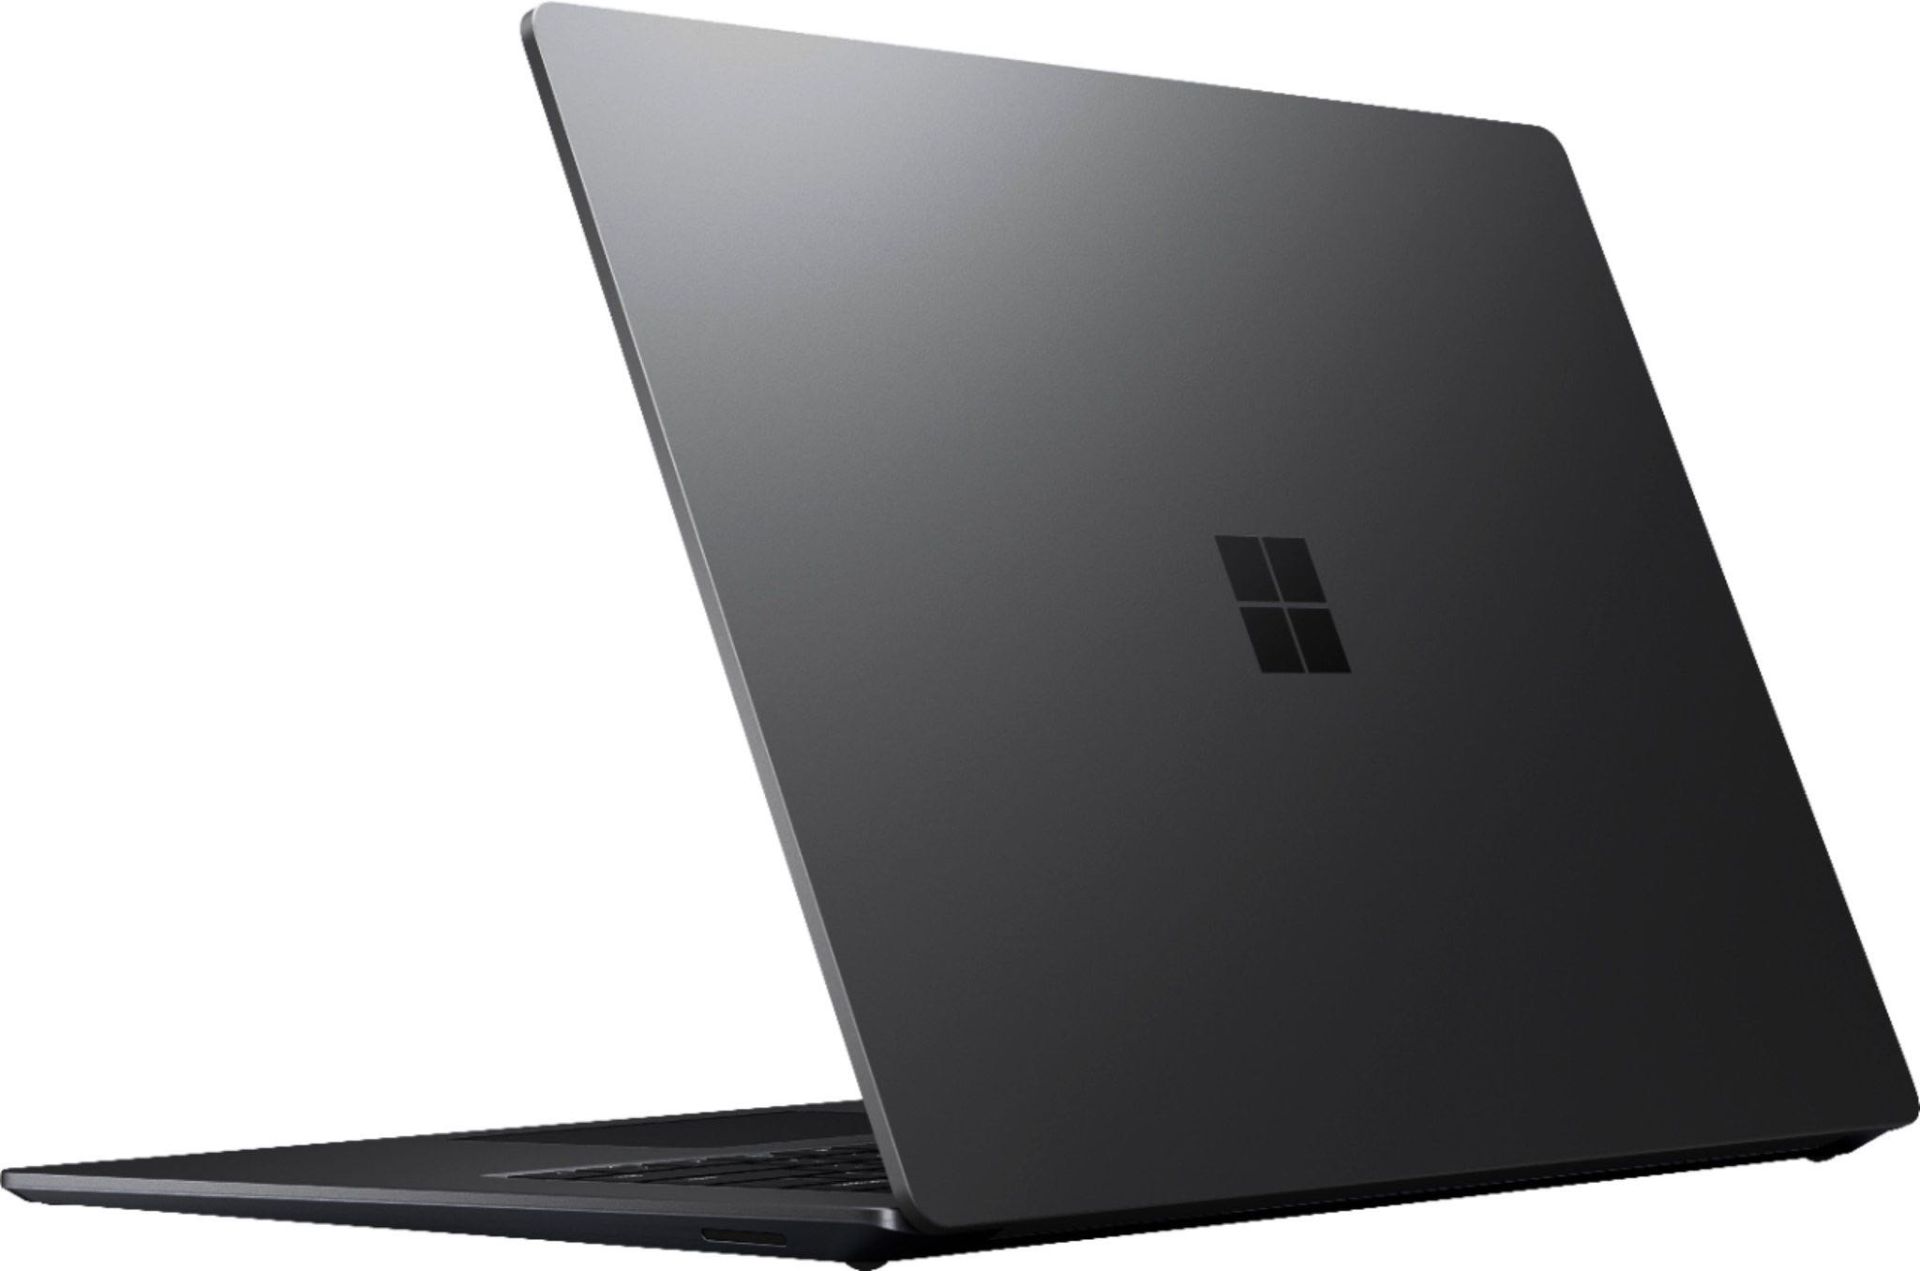 سرفیس لپ تاپ 3 مایکروسافت / Microsoft Surface Laptop 3